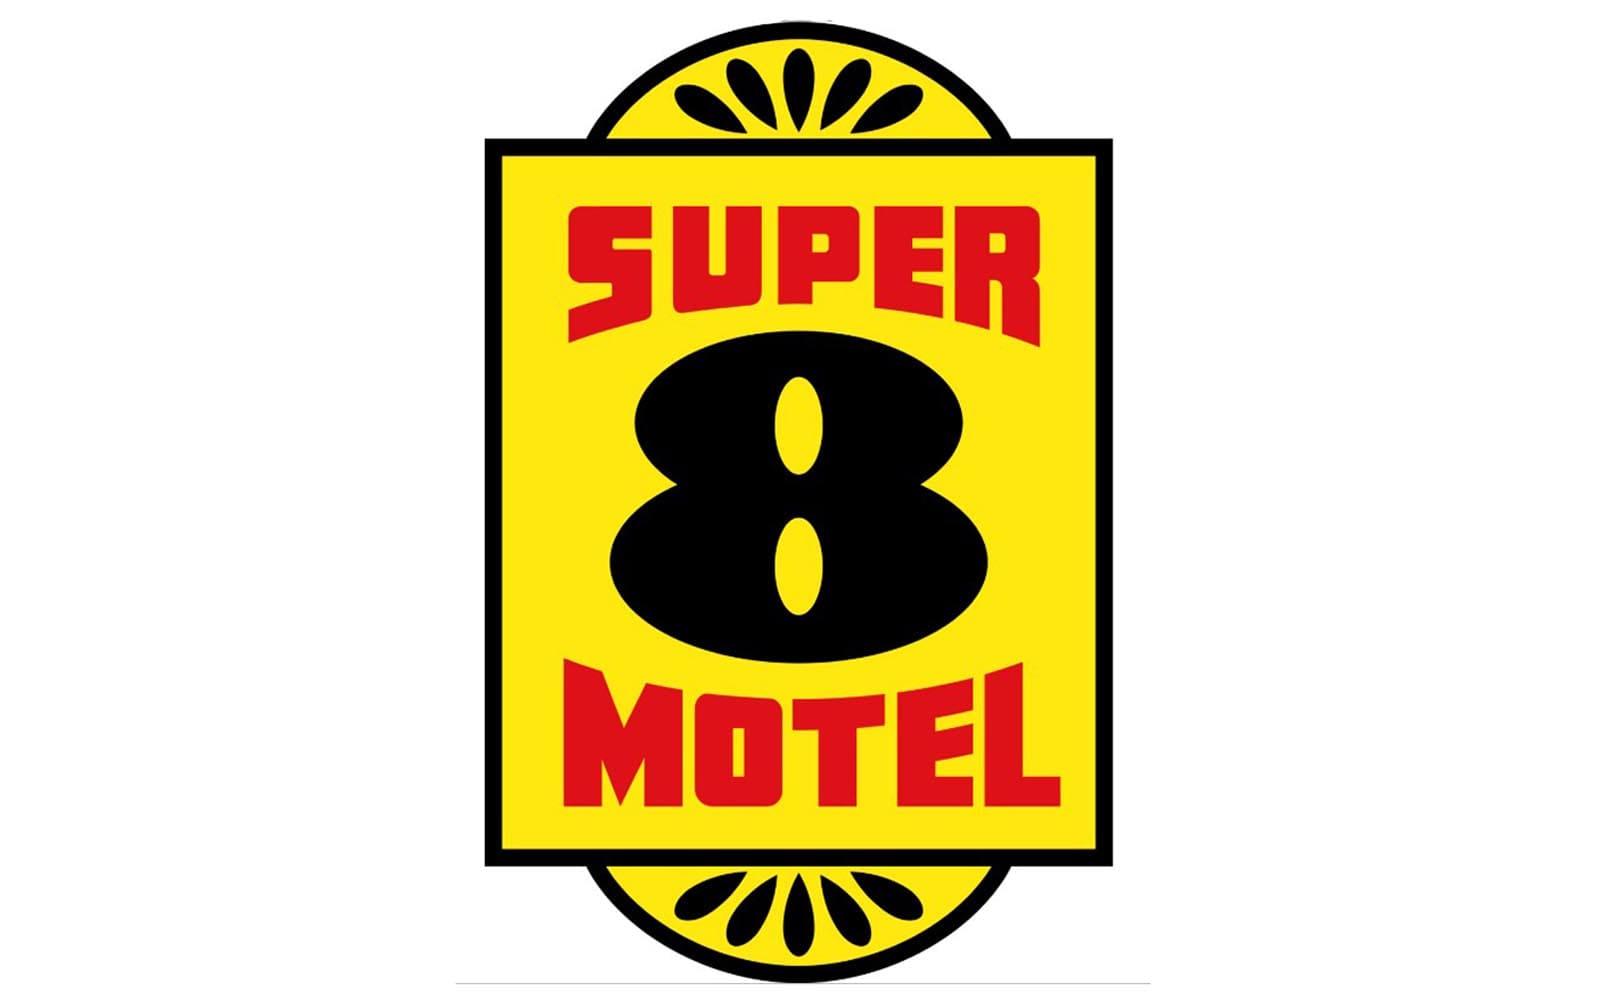 Super 8 Motel.